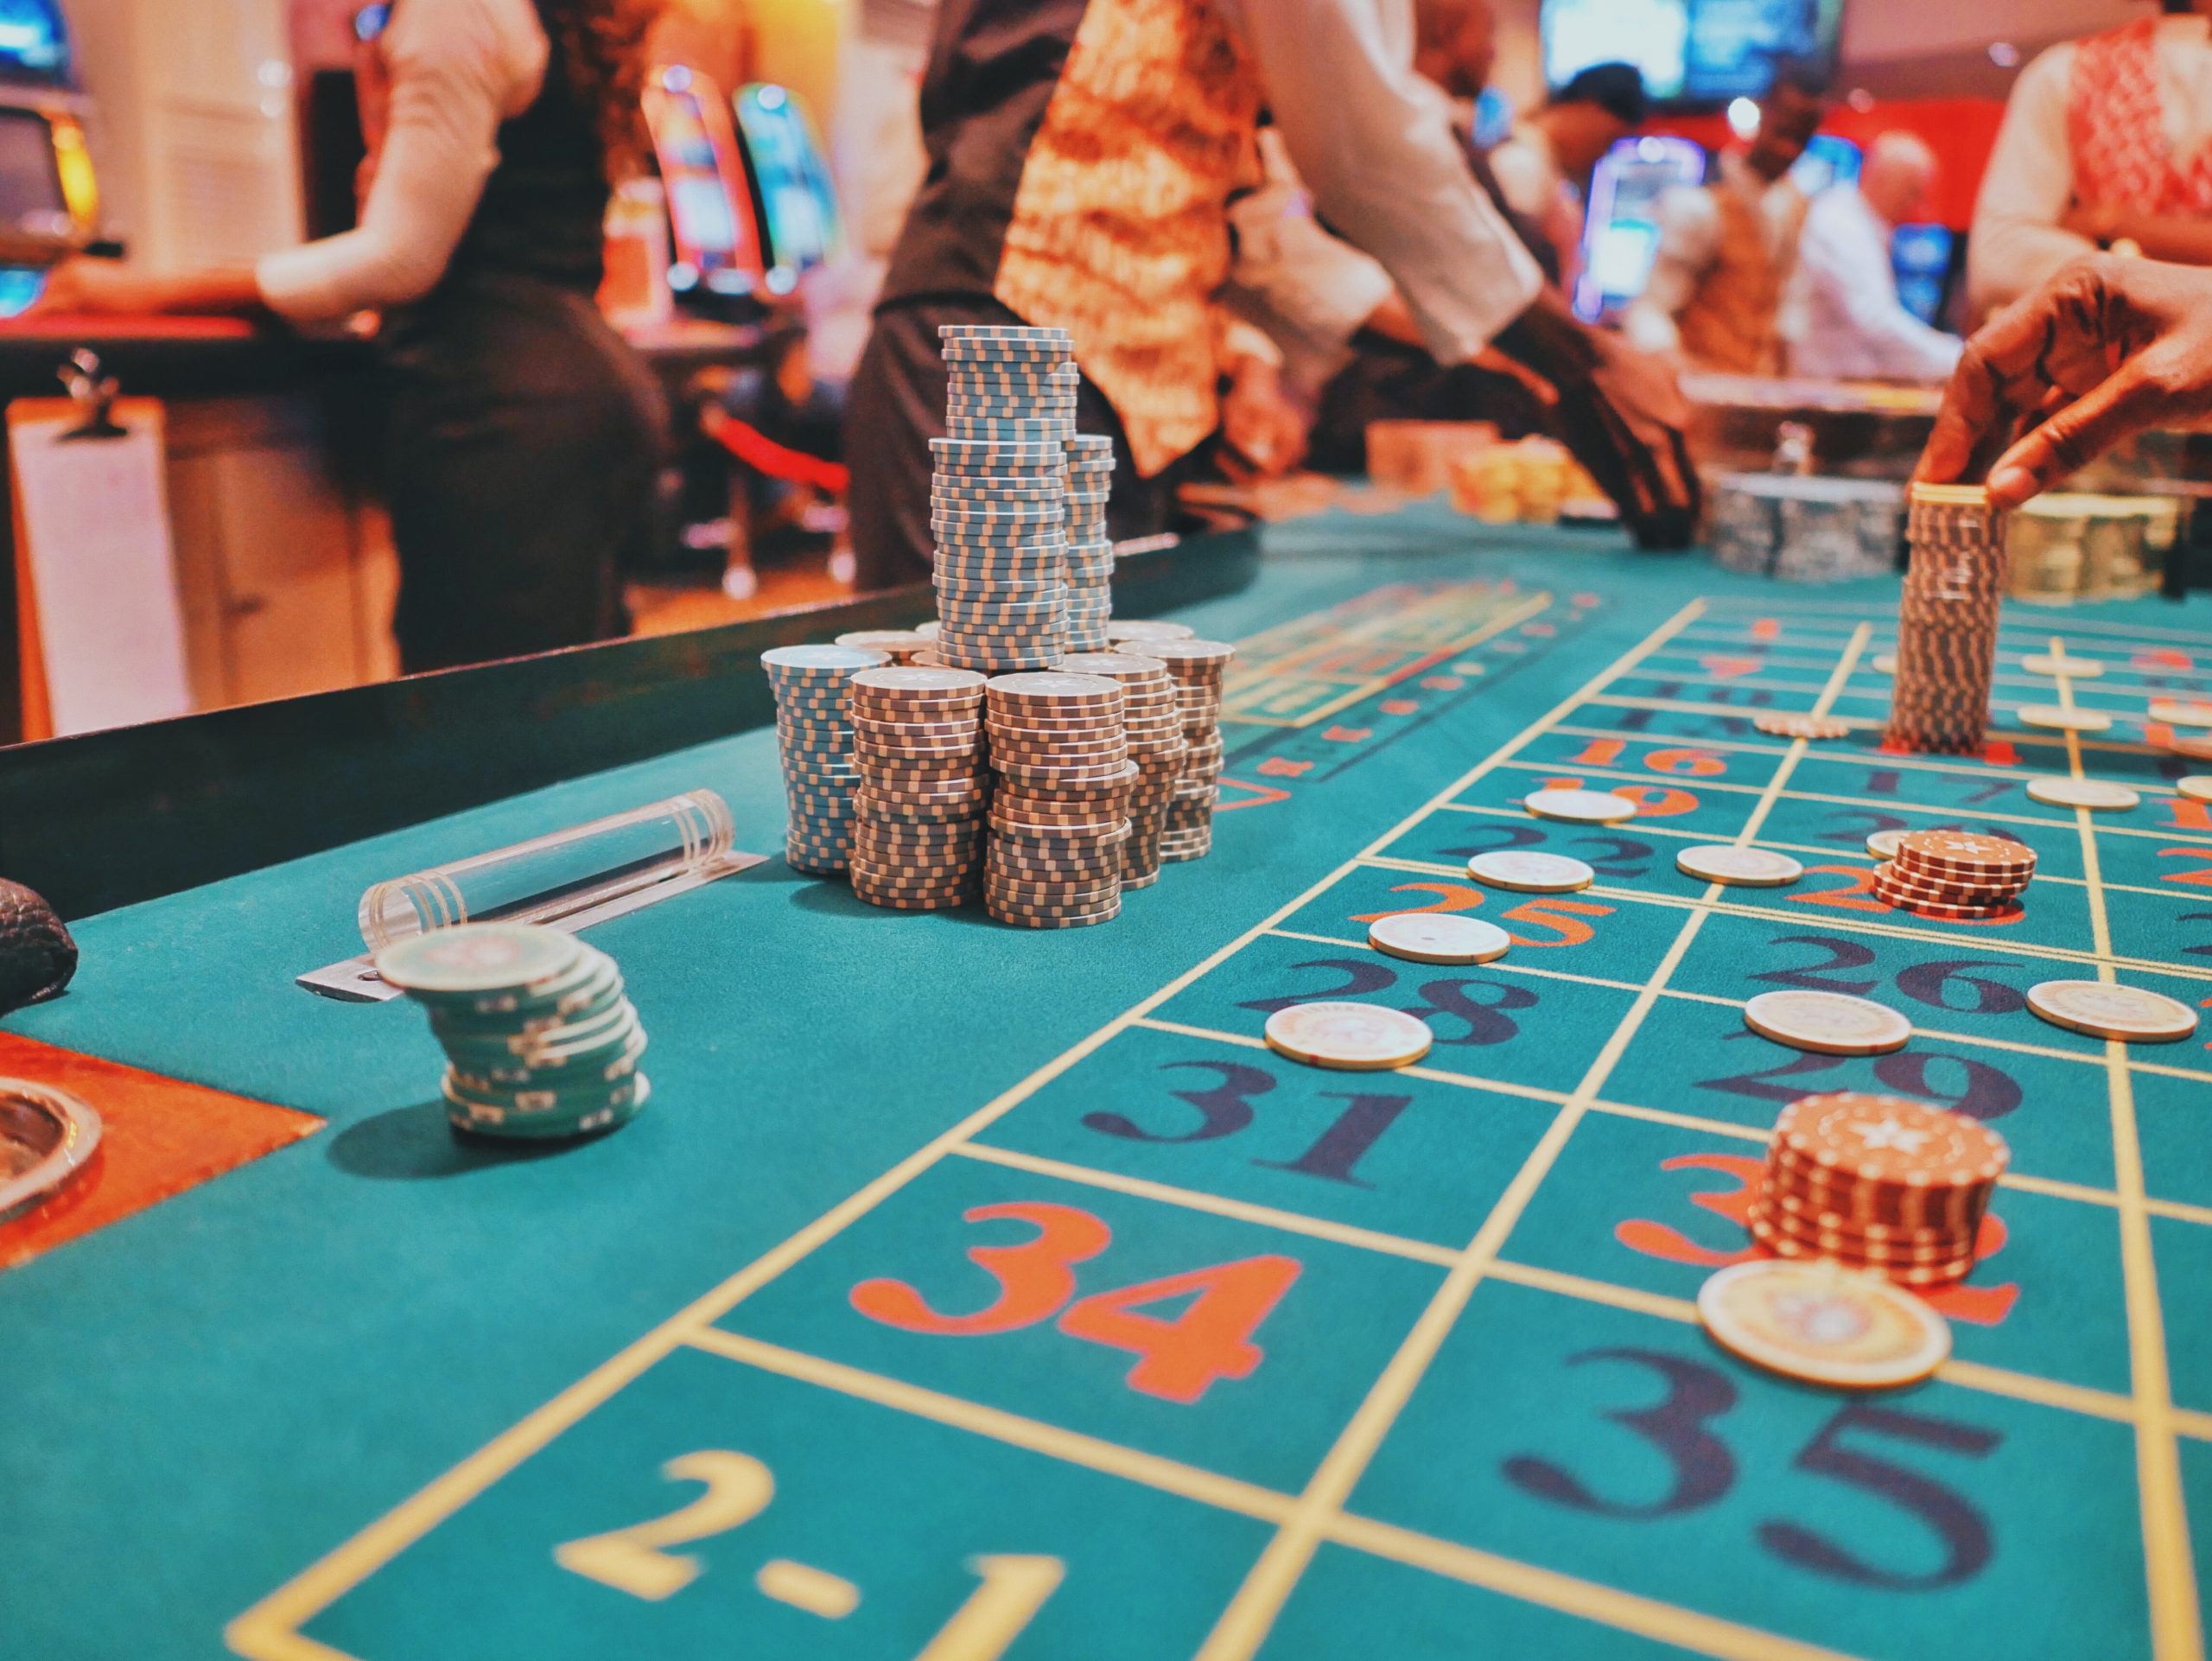 Internetinis kazino – kaip išsirinkti sąžiningą